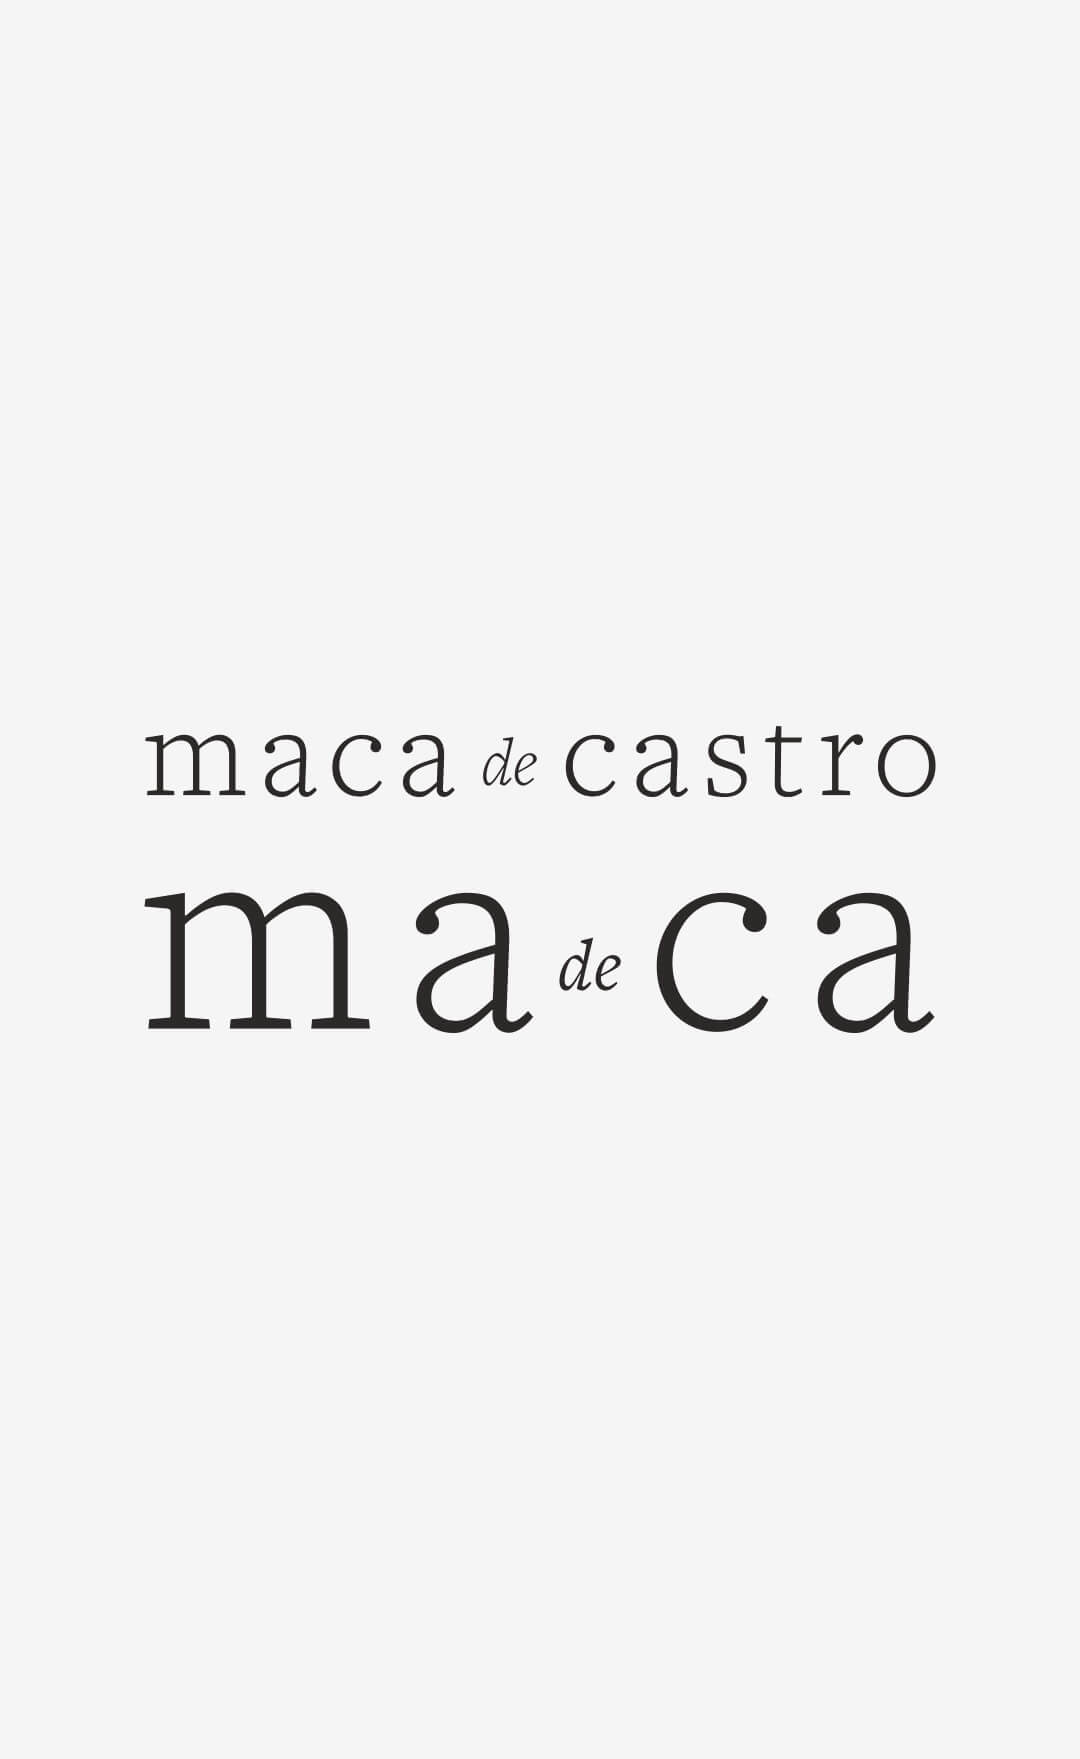 maca-de-castro-identdad-drbb.studio-2